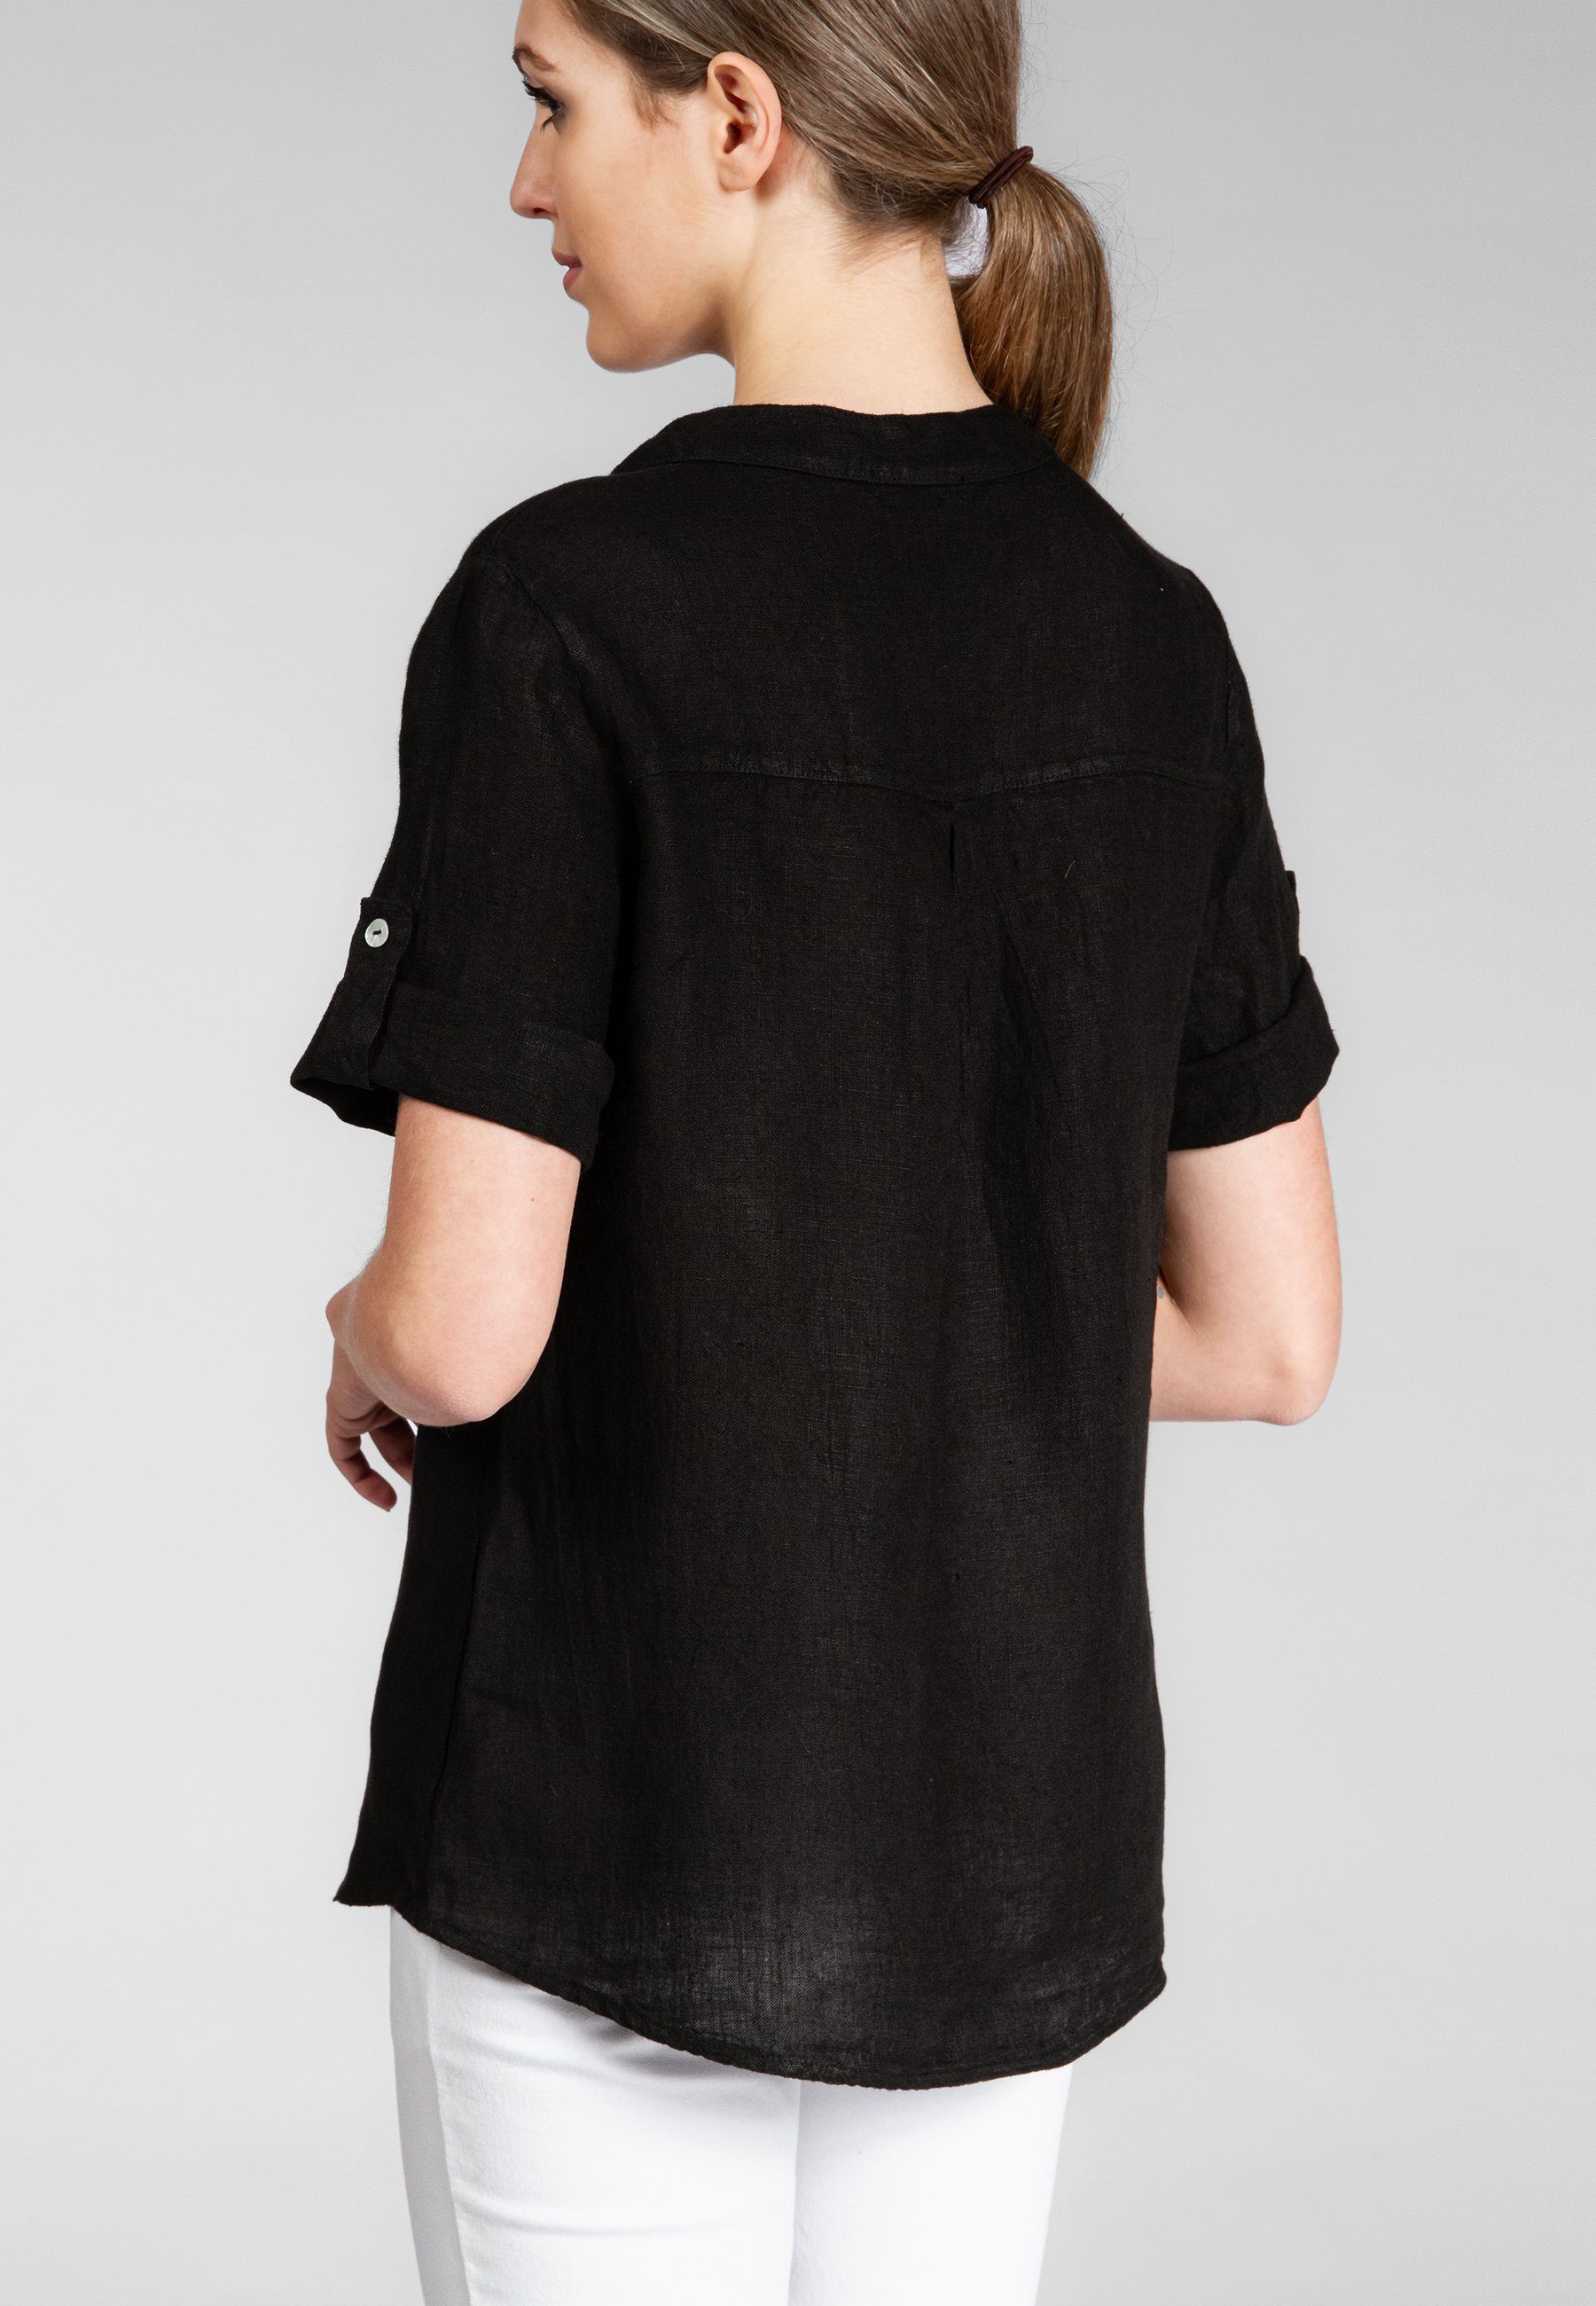 V-Ausschnitt Leinenbluse mit Caspar Sommer elegante Damen BLU024 schwarz stylischem Halbarm Shirtbluse